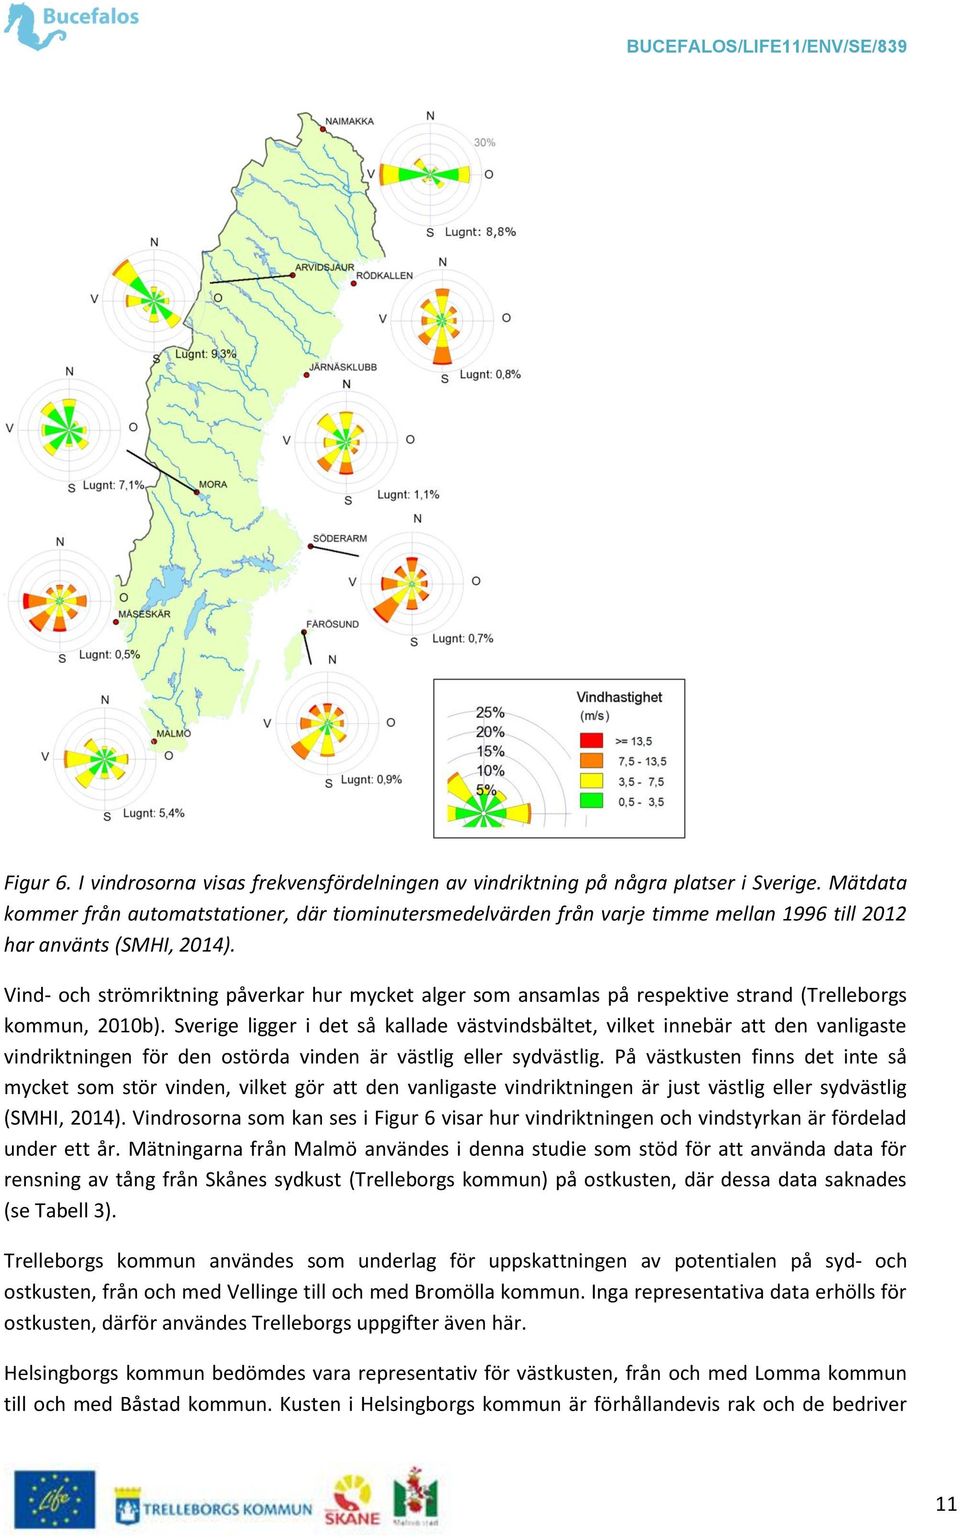 Vind- och strömriktning påverkar hur mycket alger som ansamlas på respektive strand (Trelleborgs kommun, 2010b).